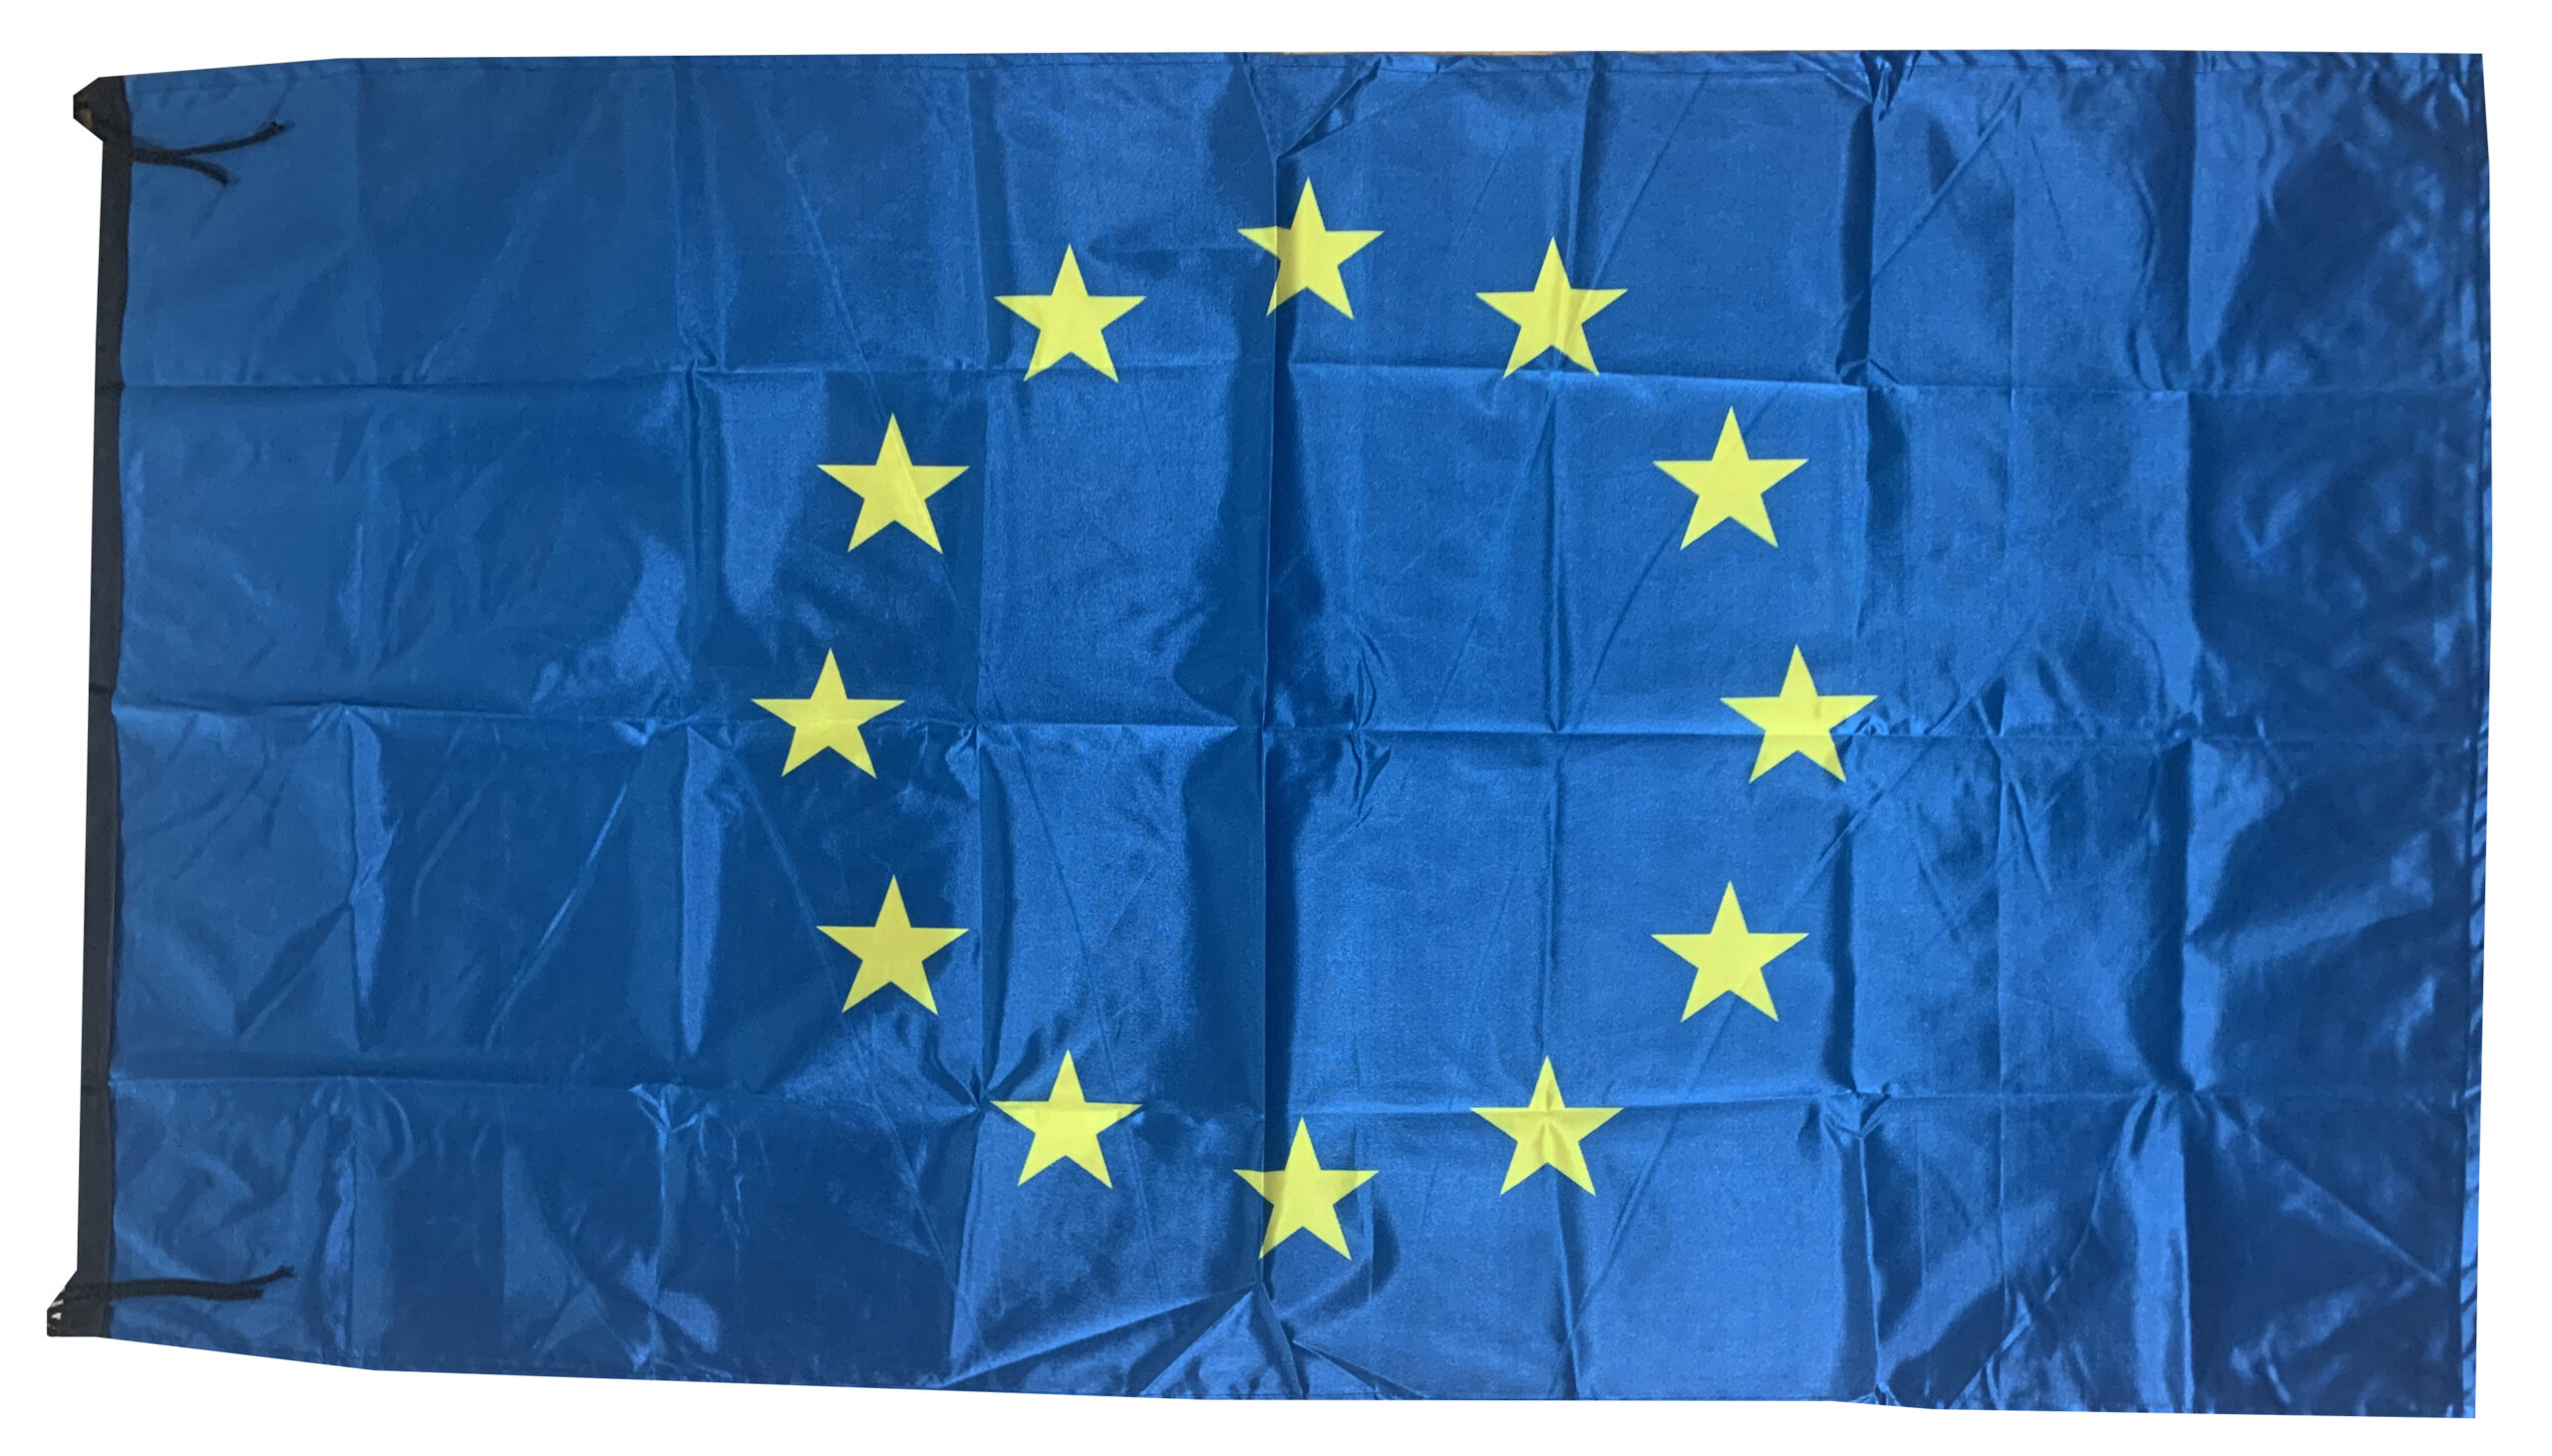 EURO 27 NATIONS FLAG EUROPEAN COUNTRIES BANNER 5x3 Feet 